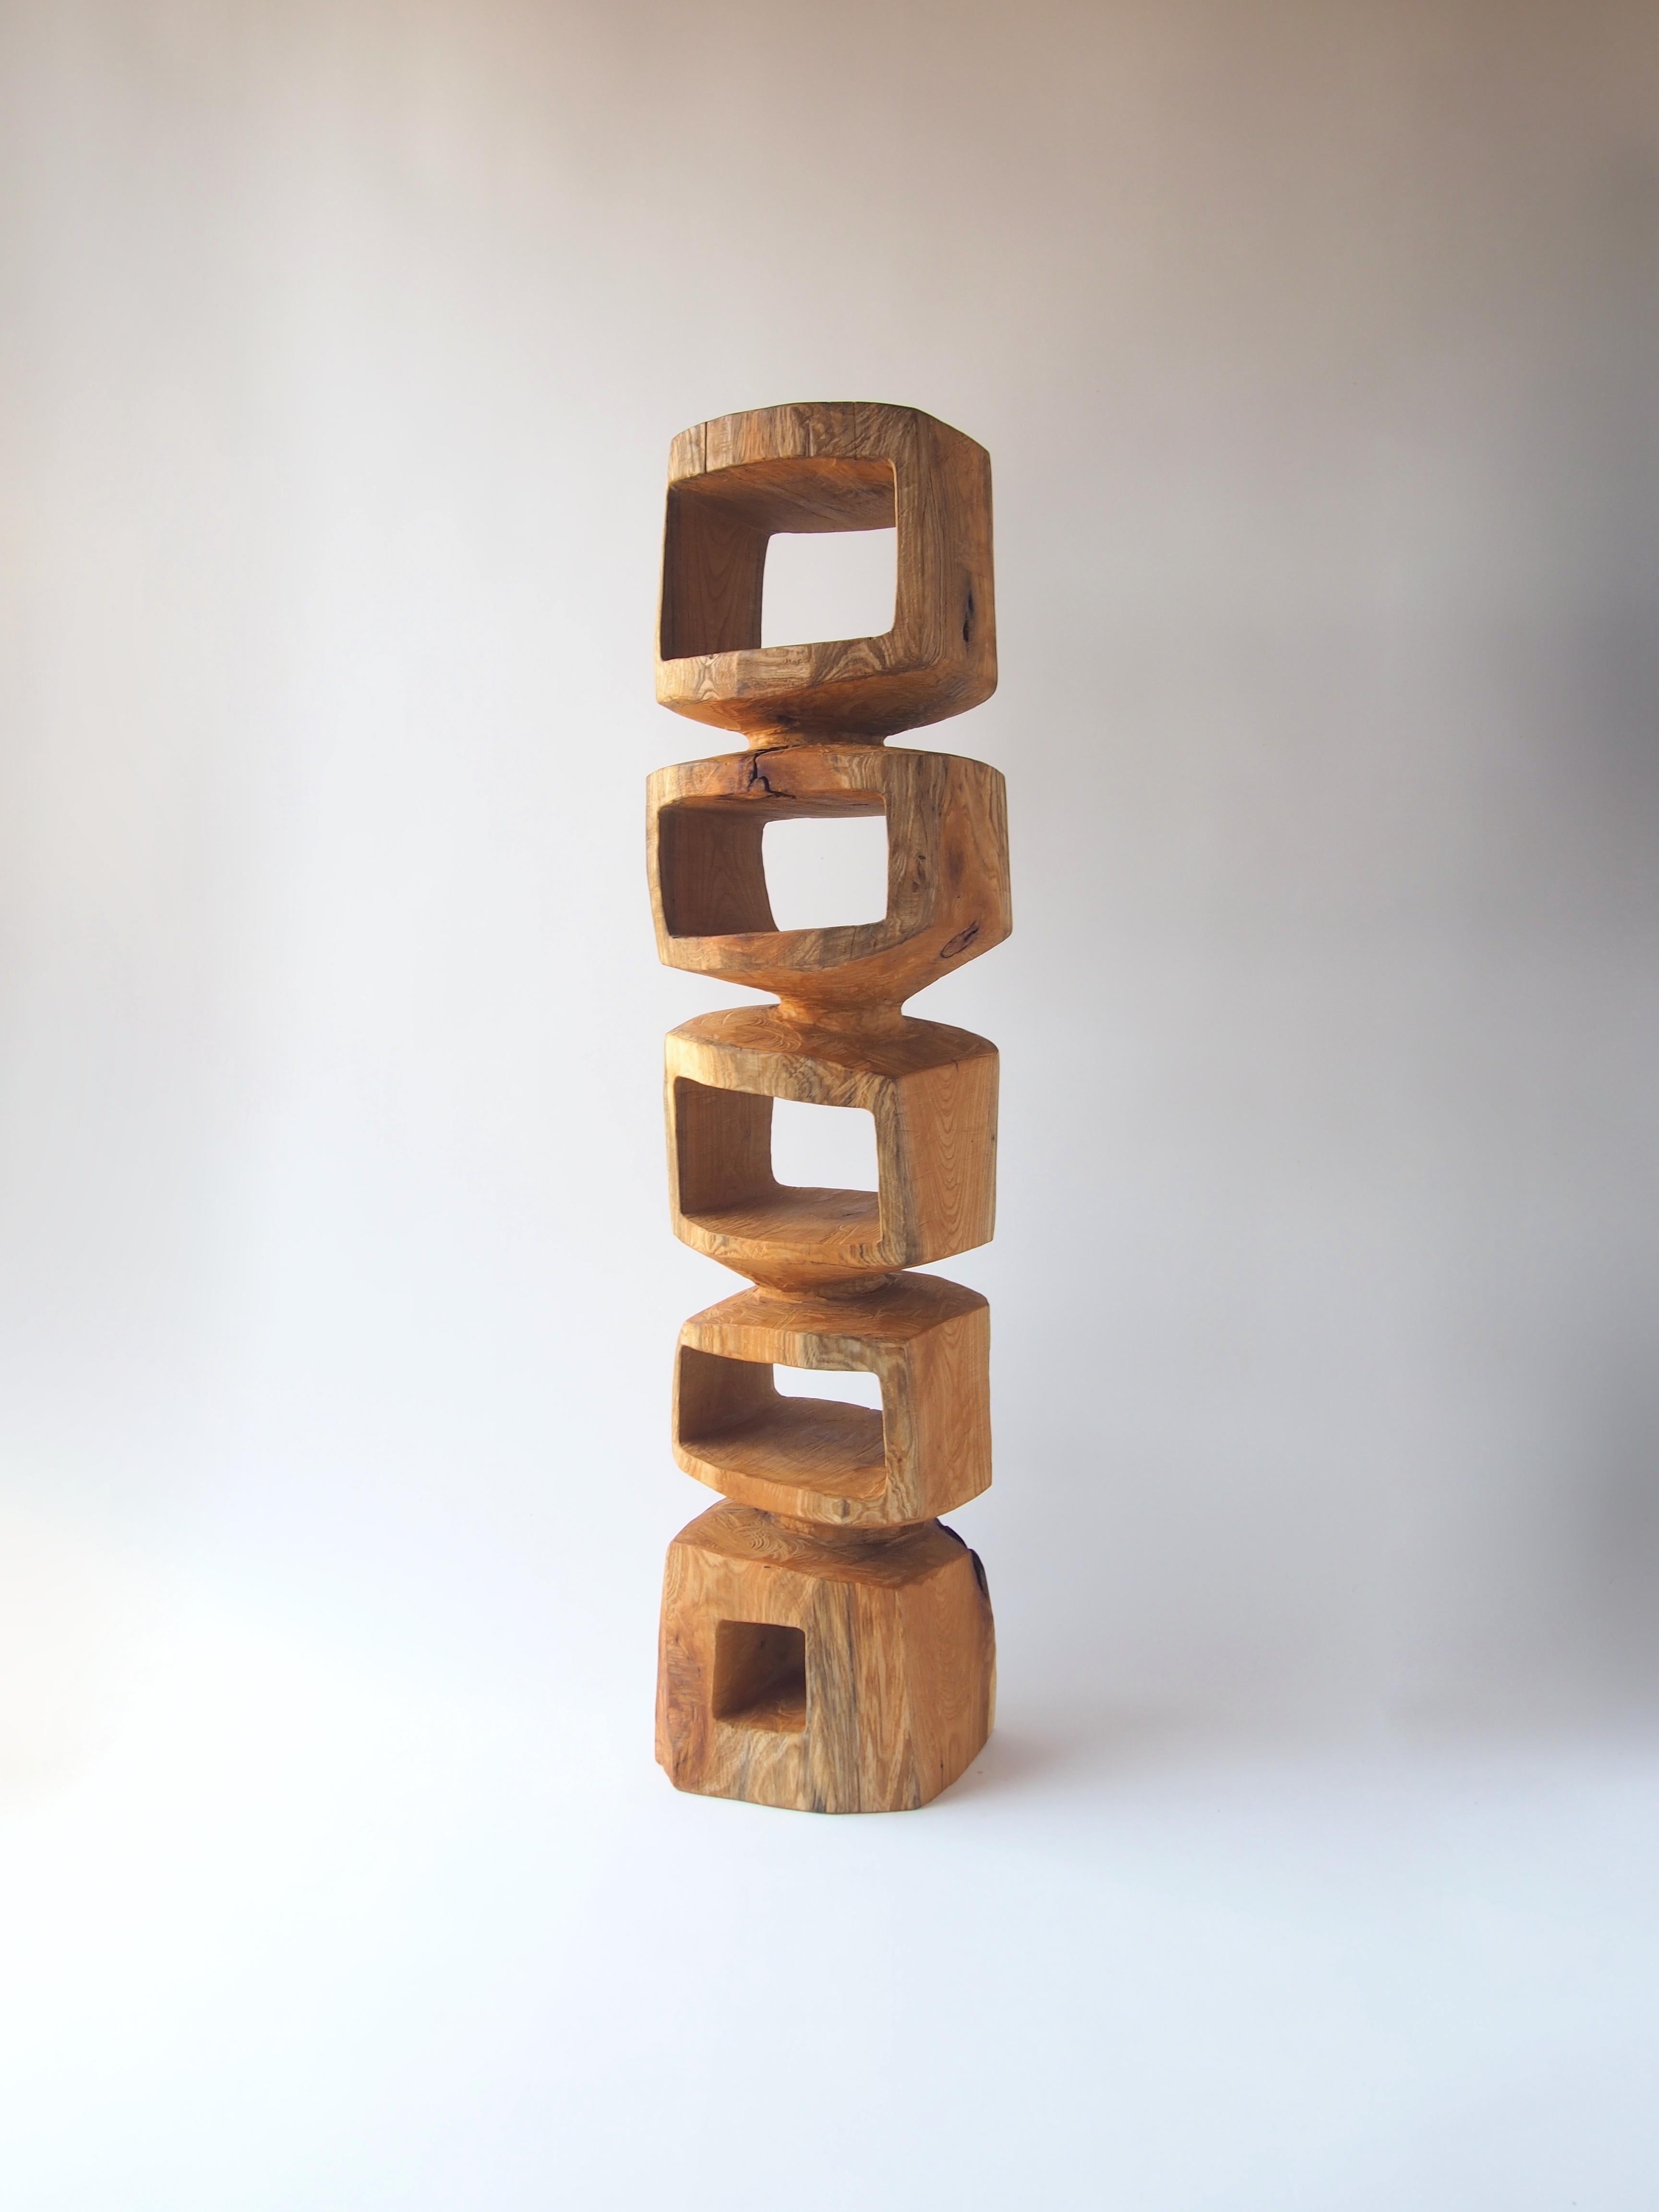 Nom : Jenga
Tabouret sculptural par les meubles sculptés Zougei
Matériau : Zelkova
Cette œuvre est taillée dans le bois avec des sortes de tronçonneuses.
La plupart des bois utilisés pour les œuvres de Nishimura ne peuvent servir à rien, ces